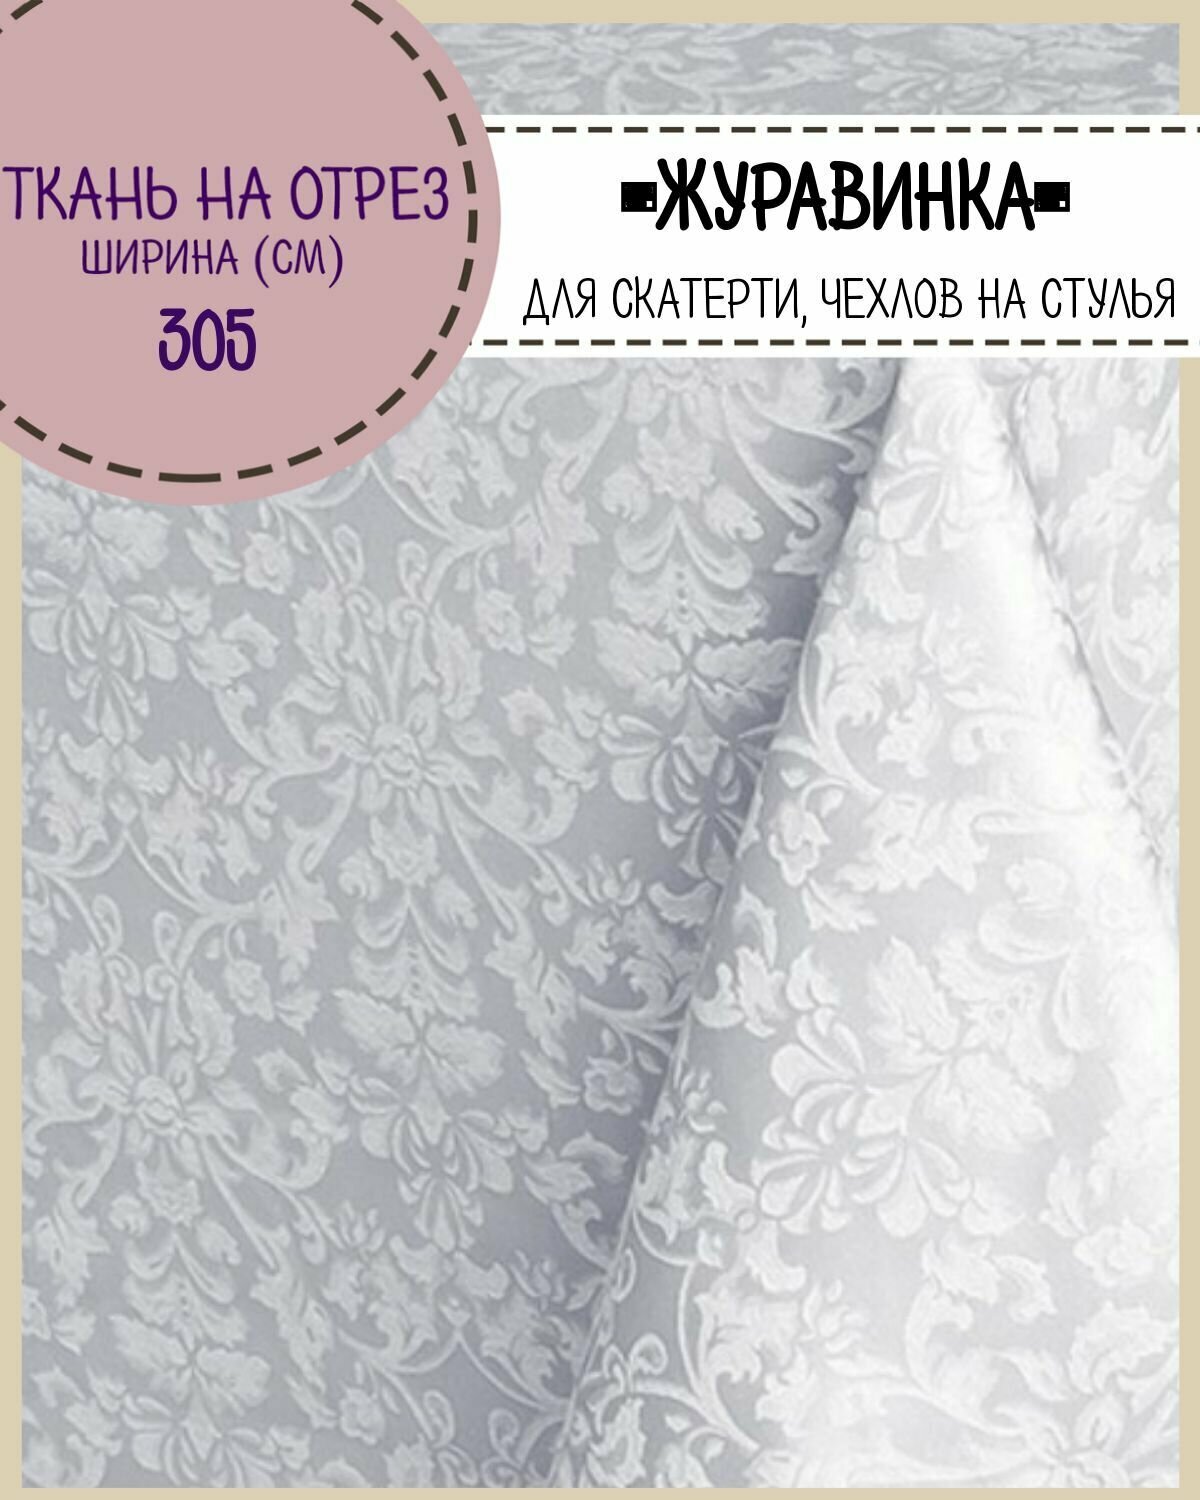 Ткань Скатертная "Журавинка", жаккард, цв. белый, ш-305 см, на отрез, цена за пог. метр